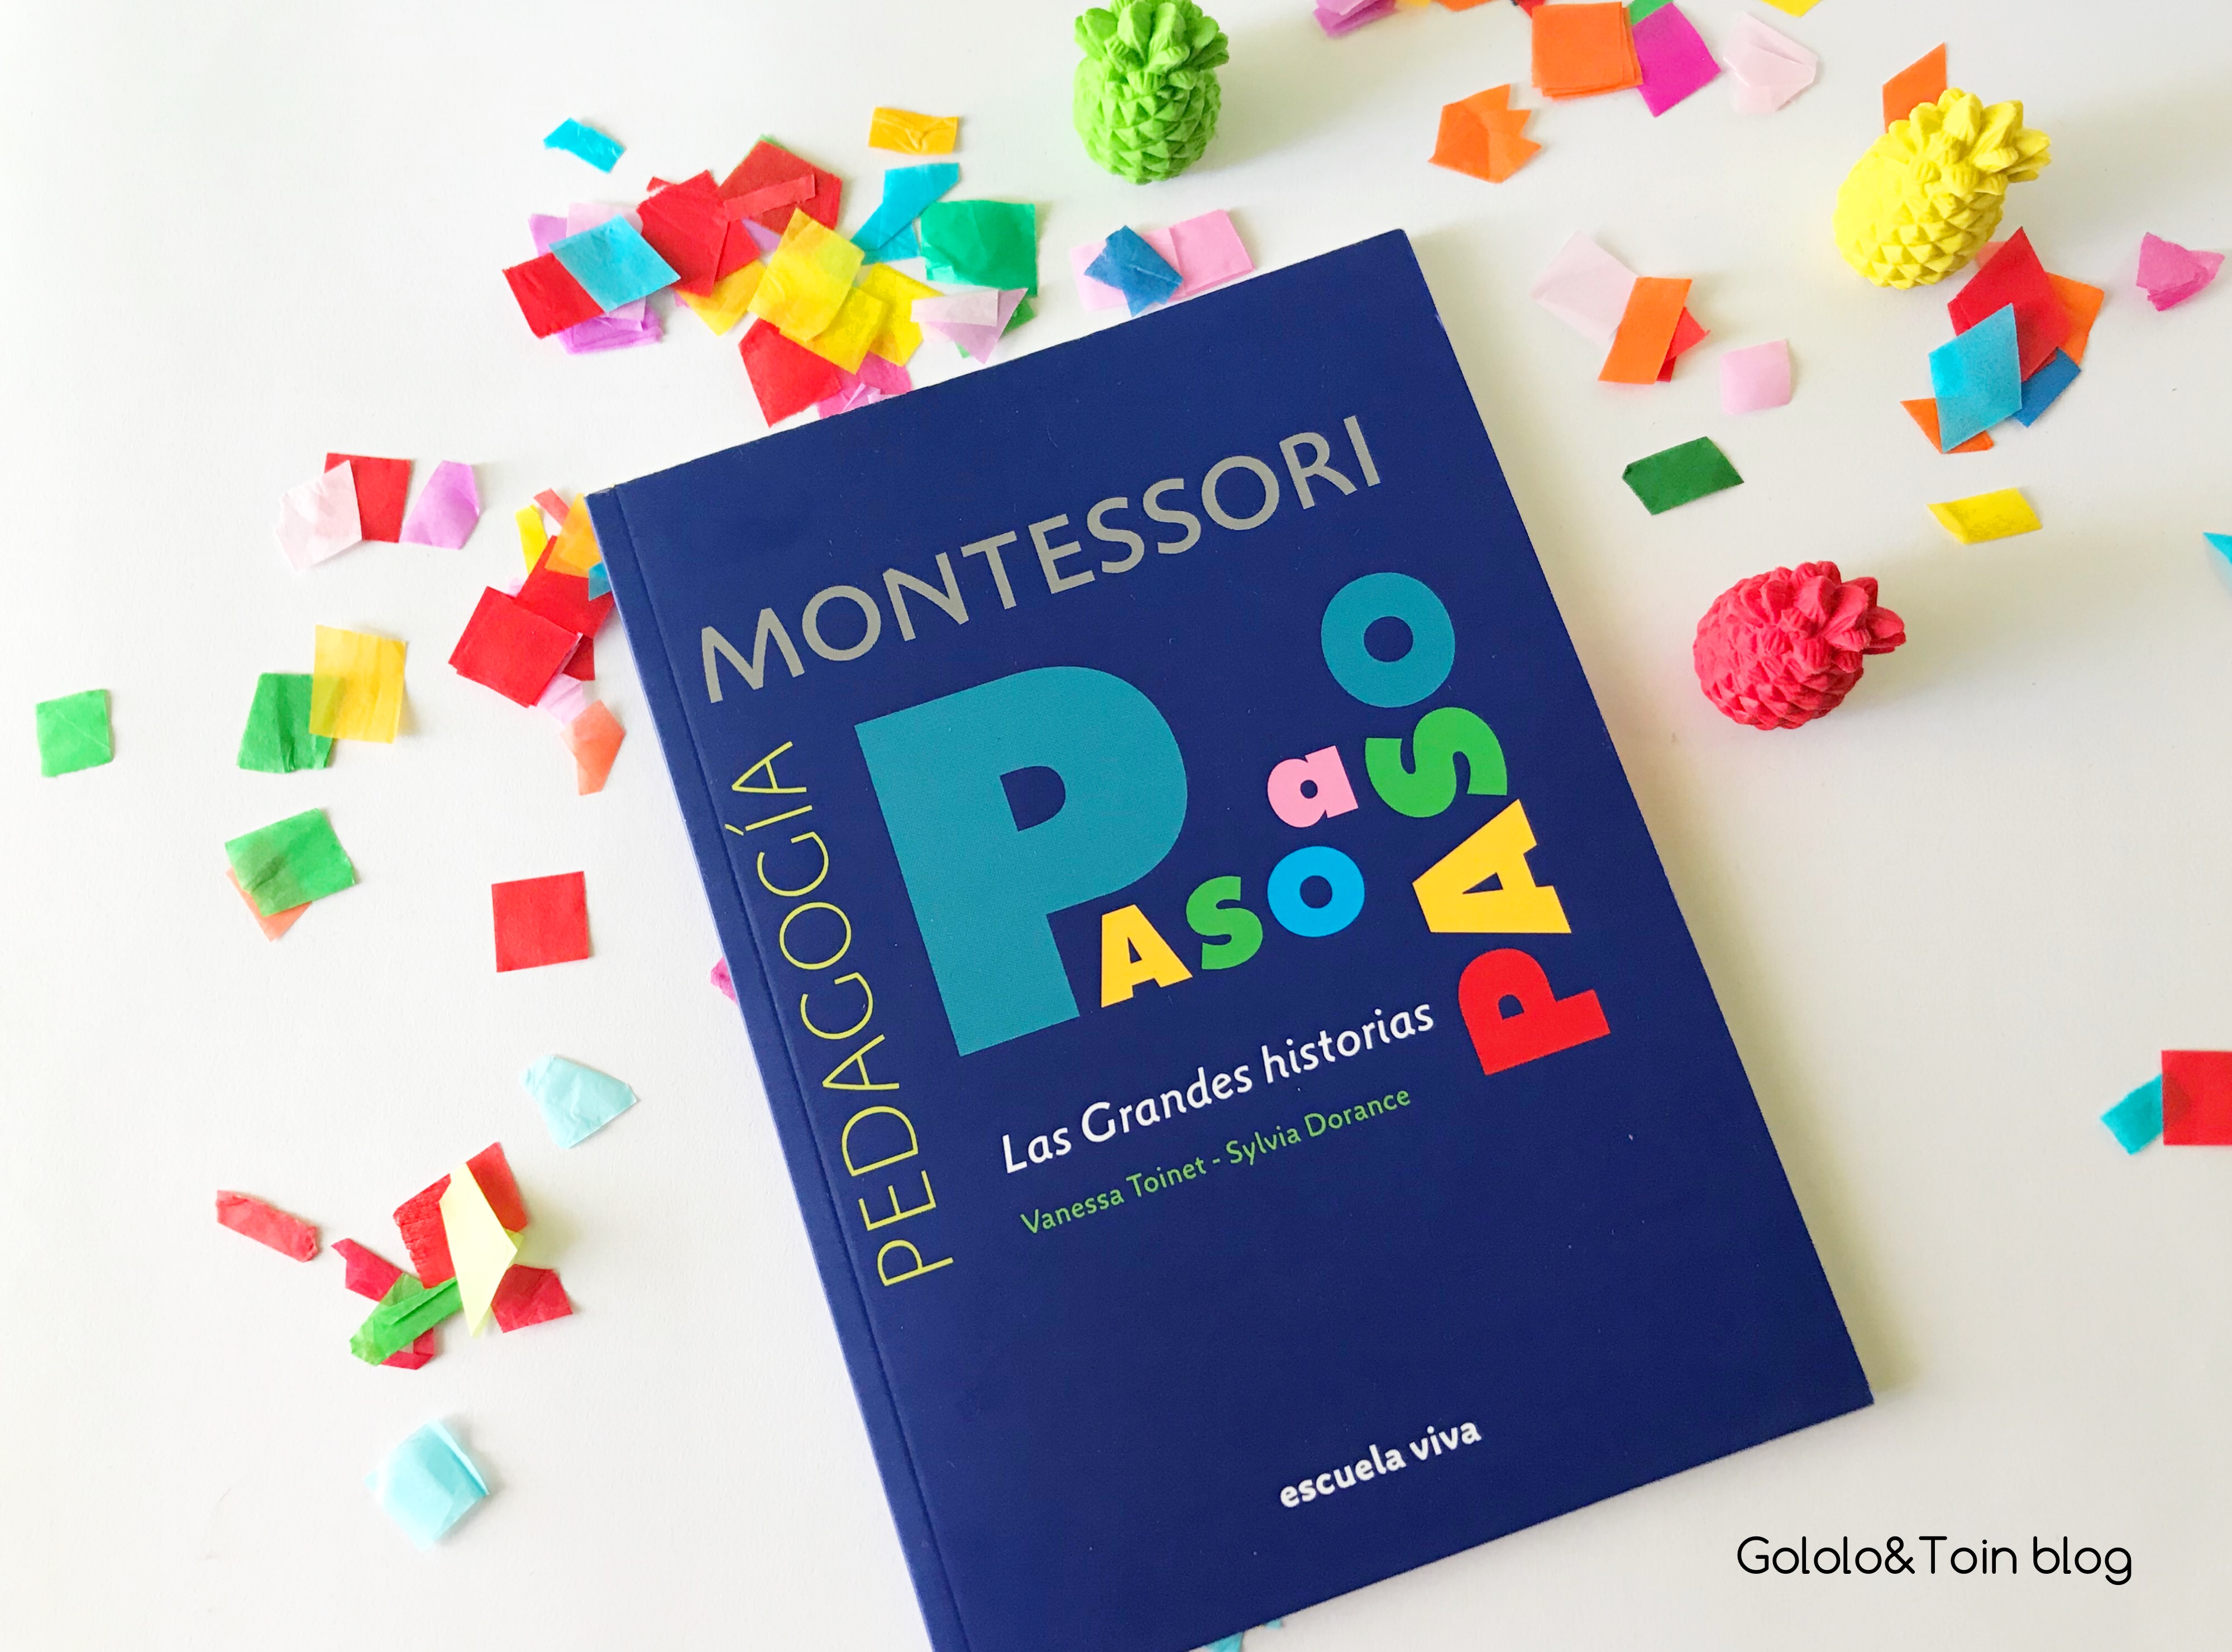 Las Grandes Historias Montessori